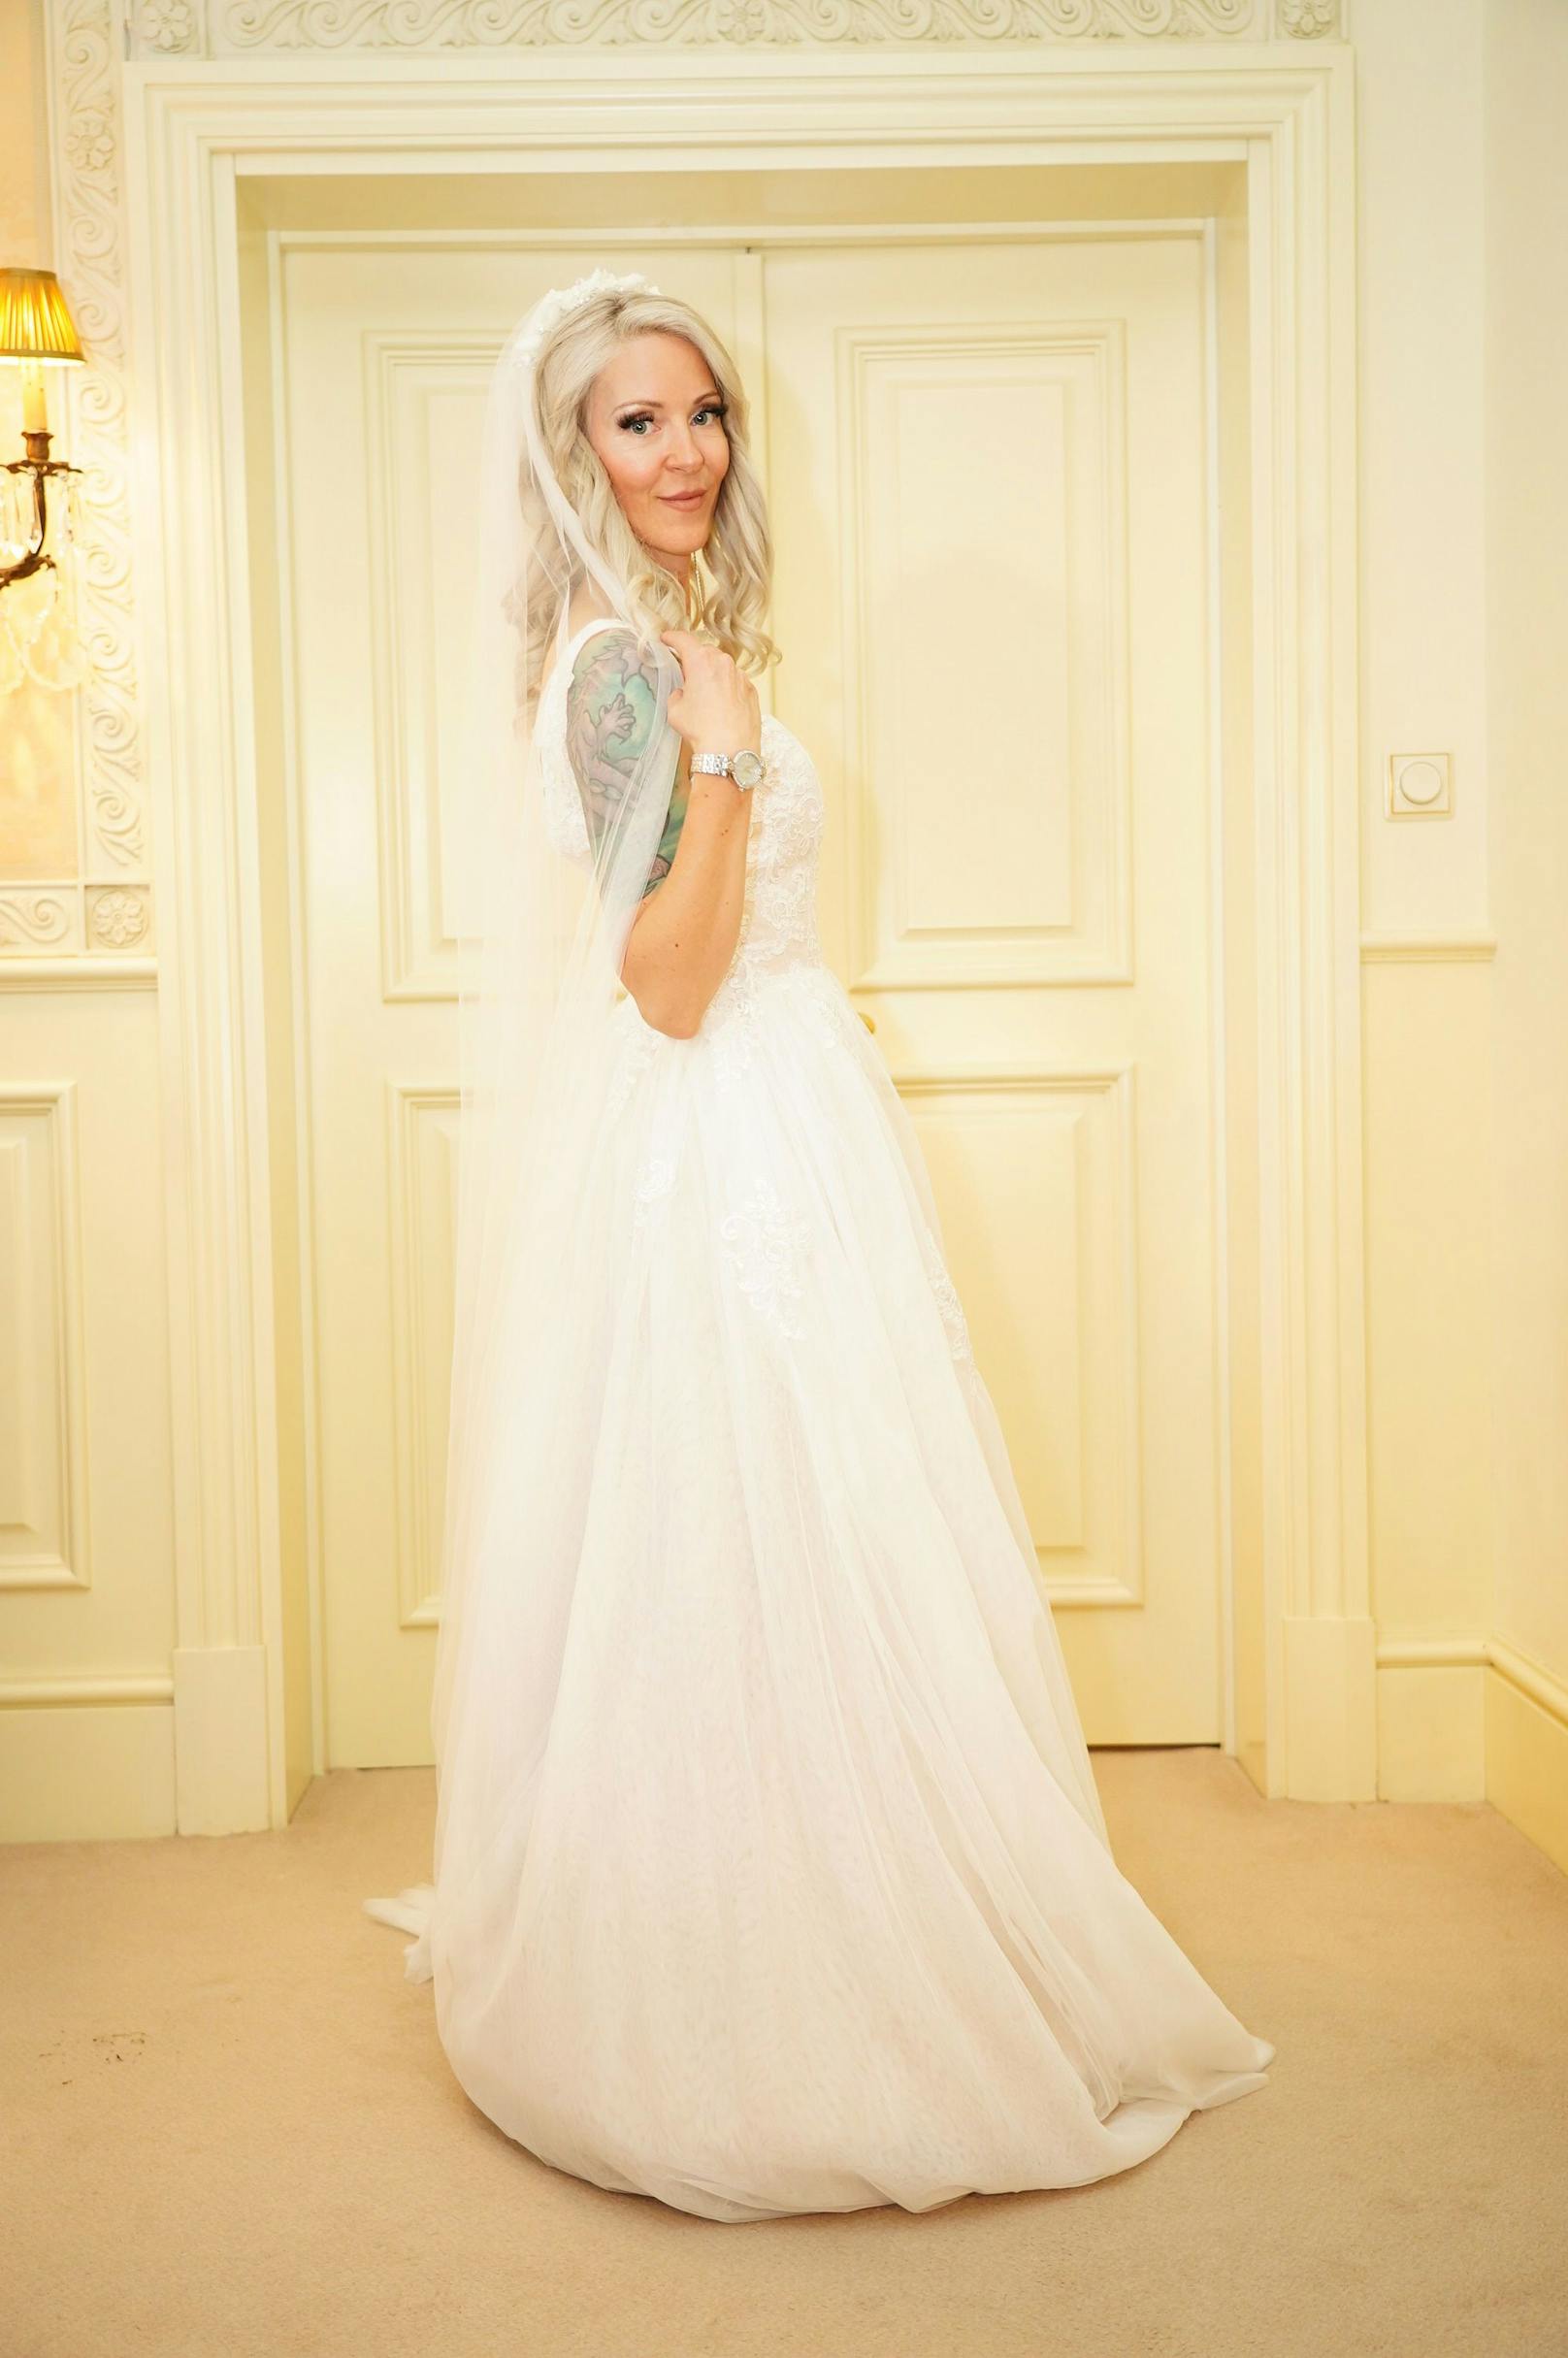 Simone "Bienchen" präsentiert sich im Brautkleid.